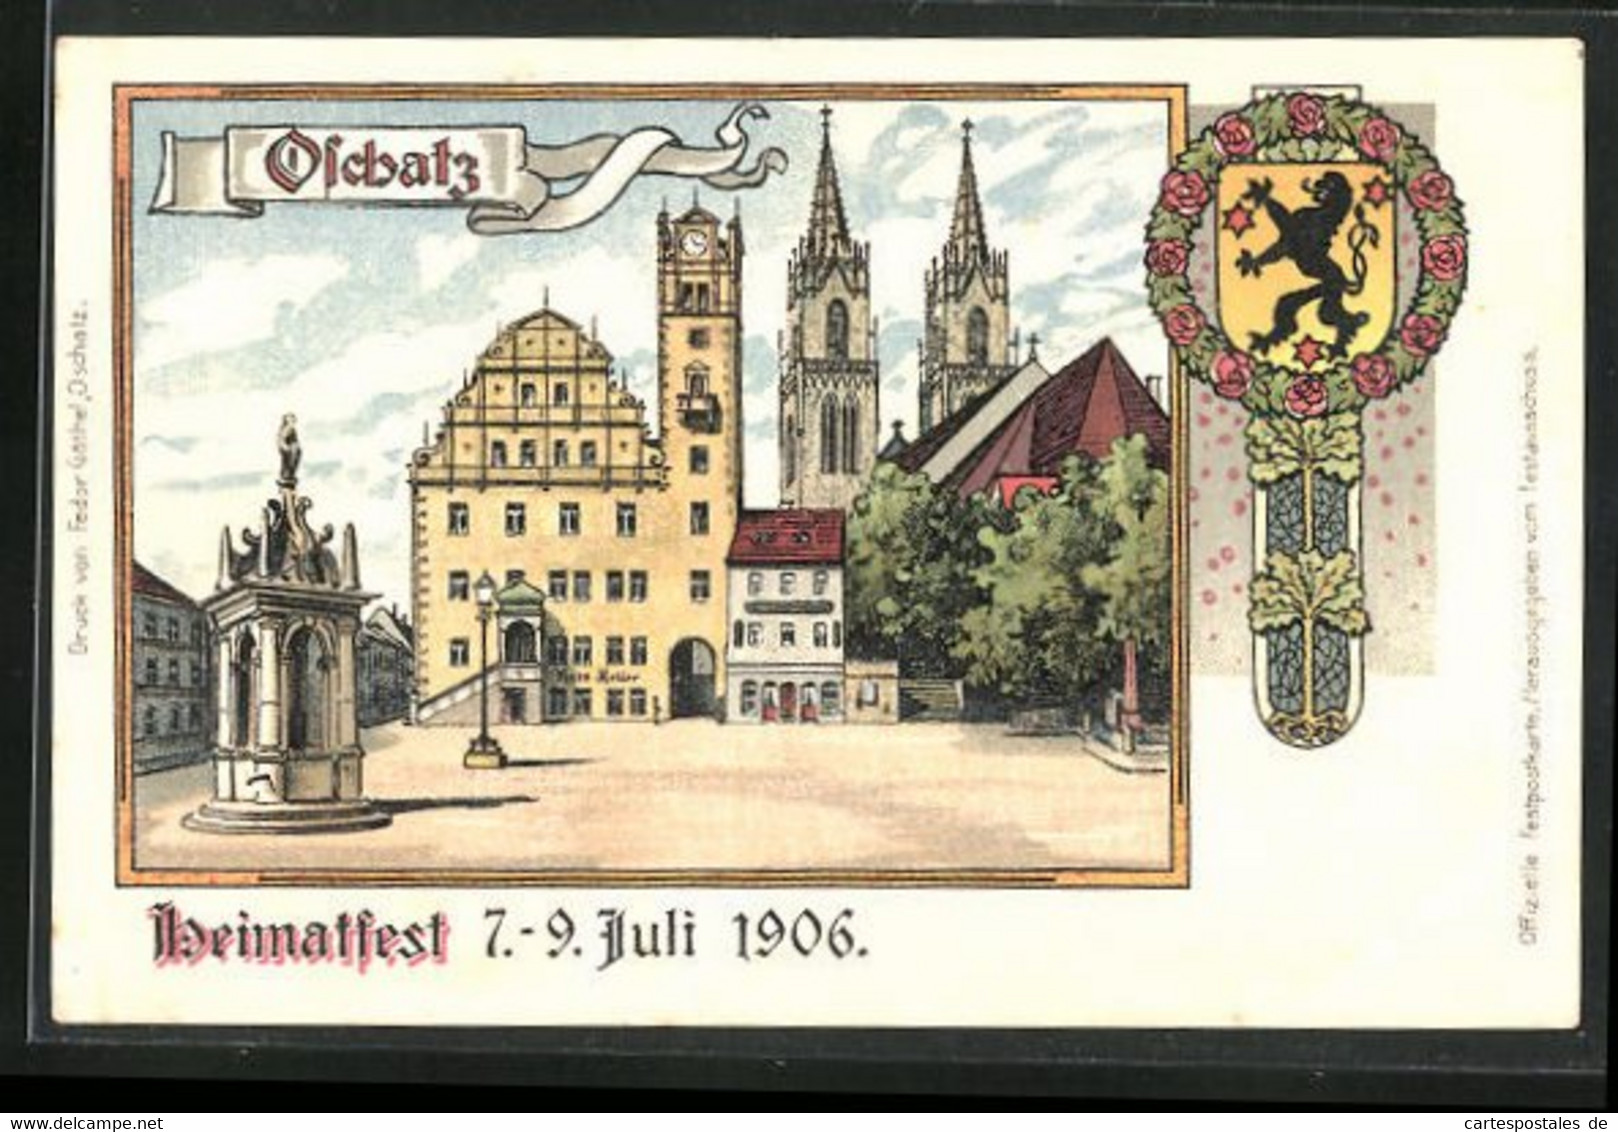 Lithographie Oschatz, Heimatfest 7.-9. Juli 1906, Rathaus Mit Gasthof Ratskeller, Festpostkarte - Oschatz